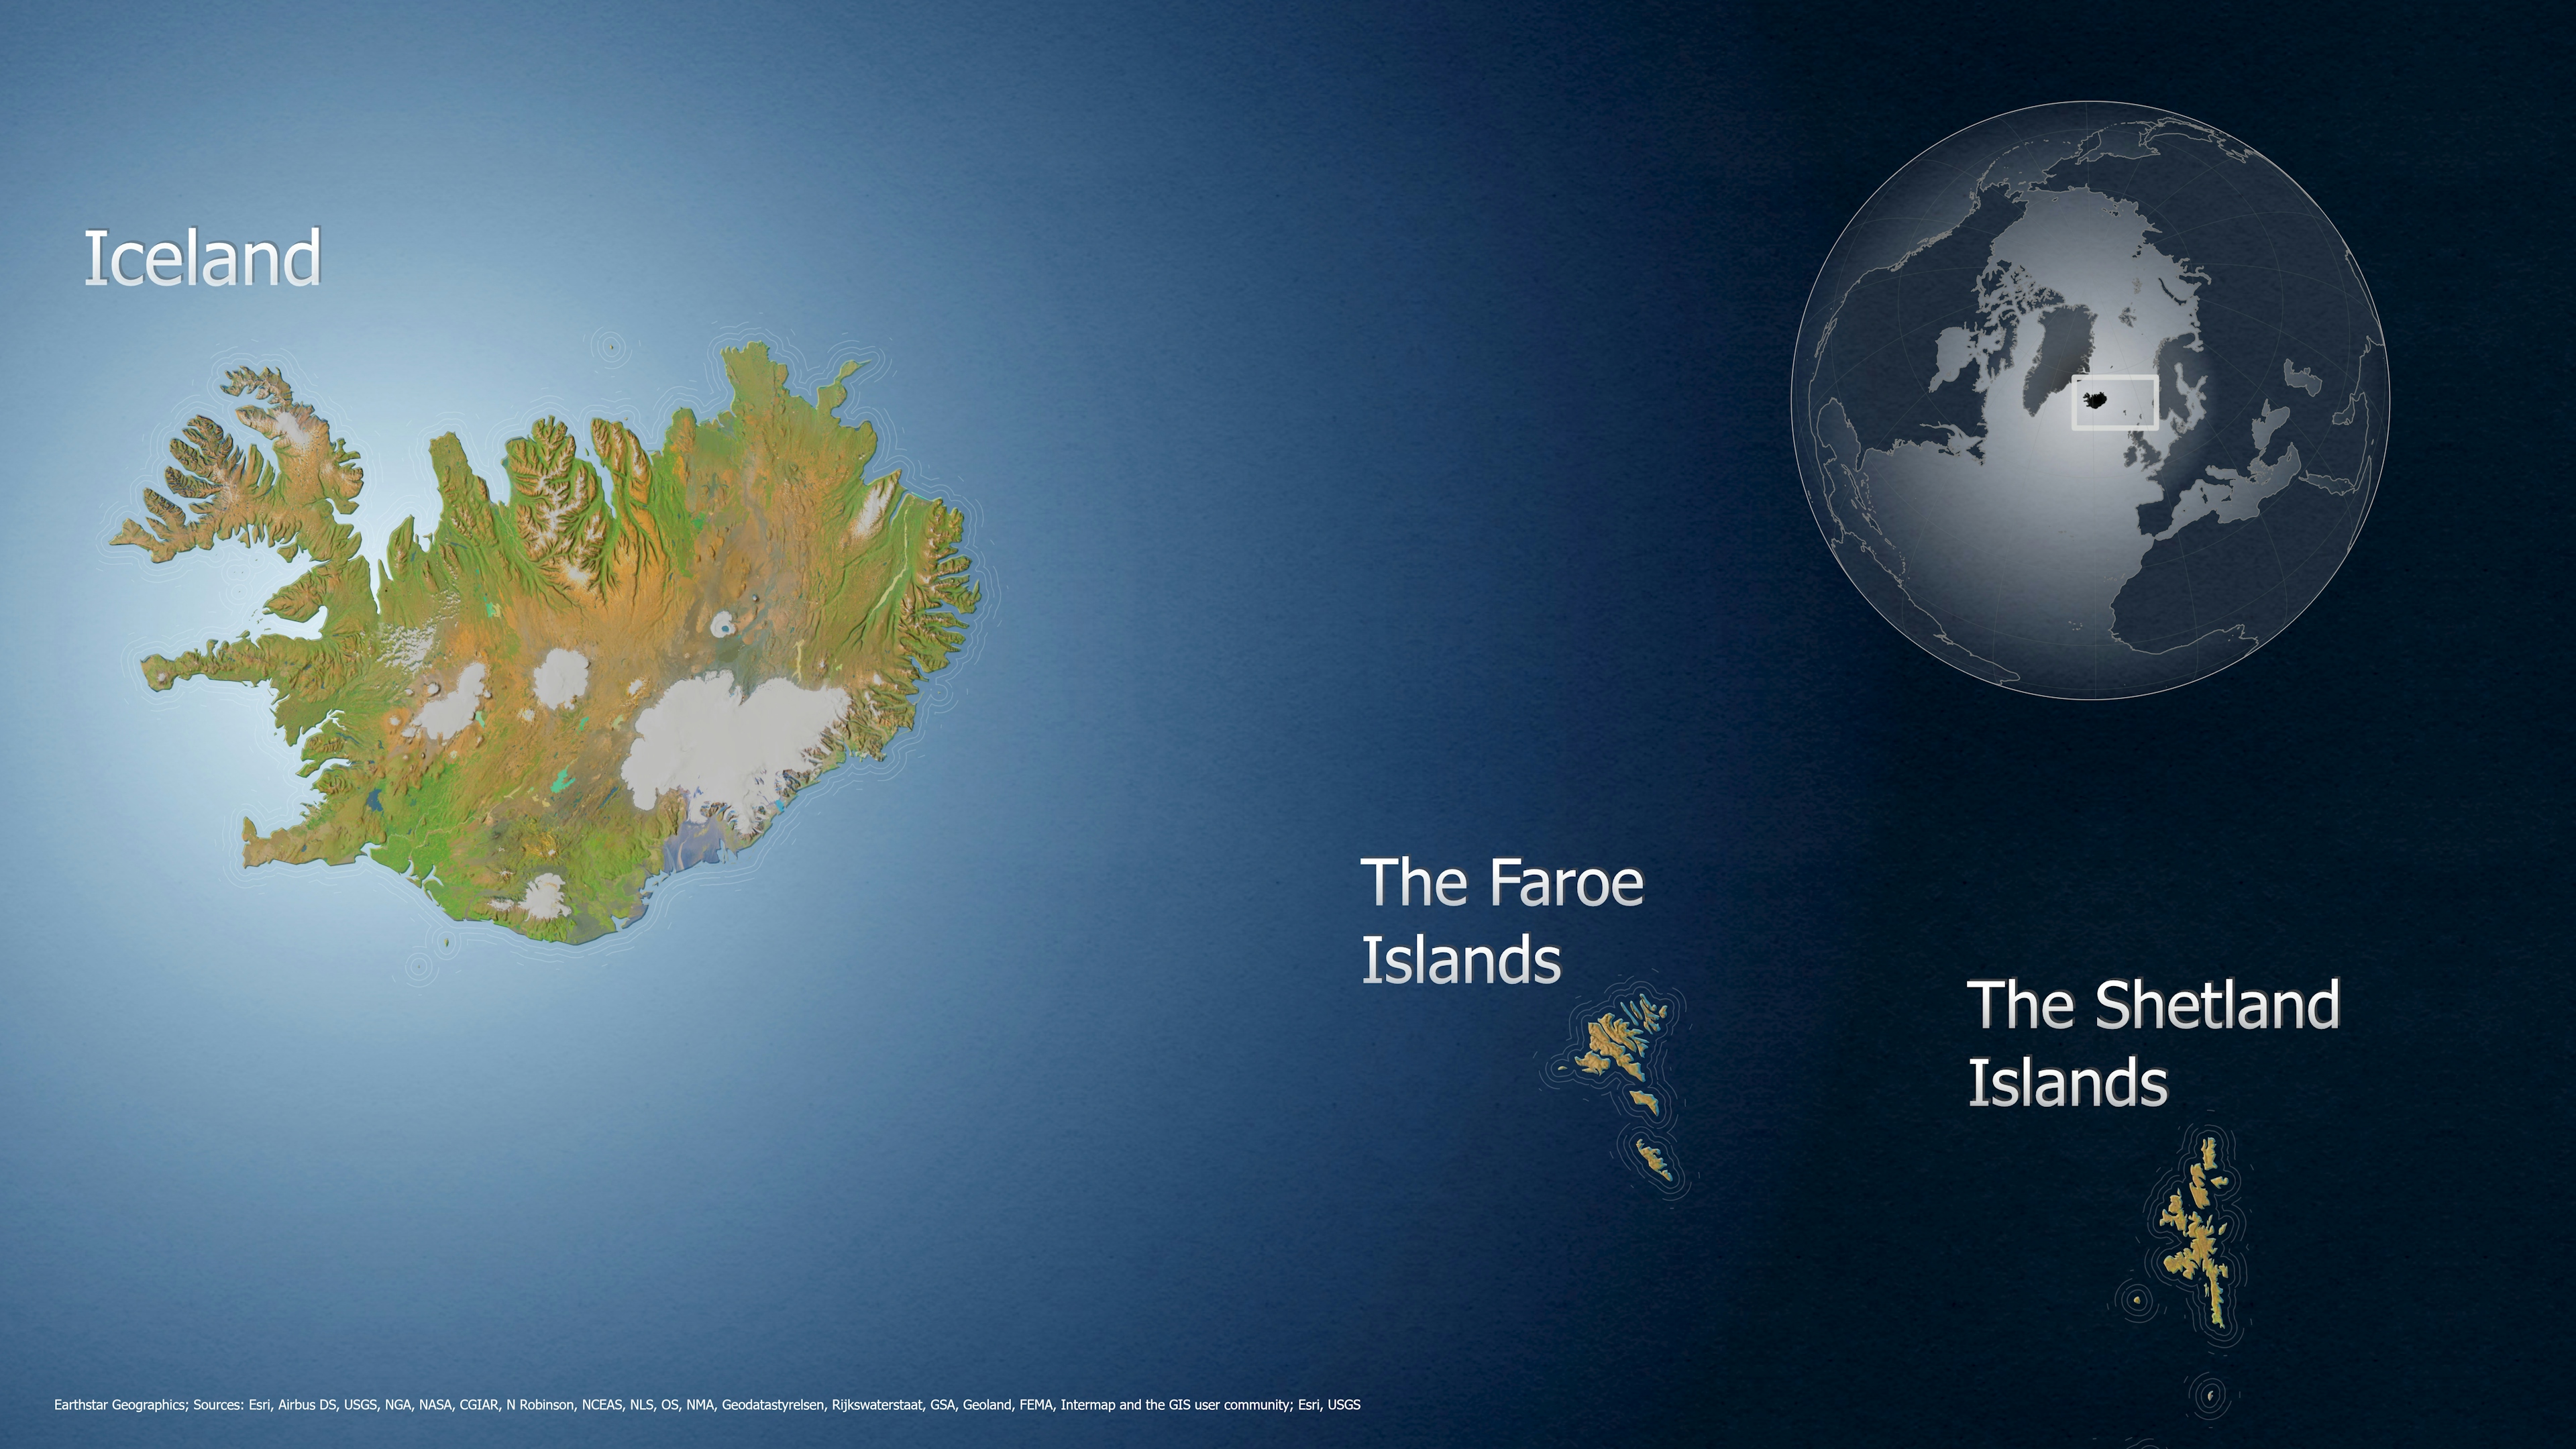 Iceland, the Faroe and Shetland Islands